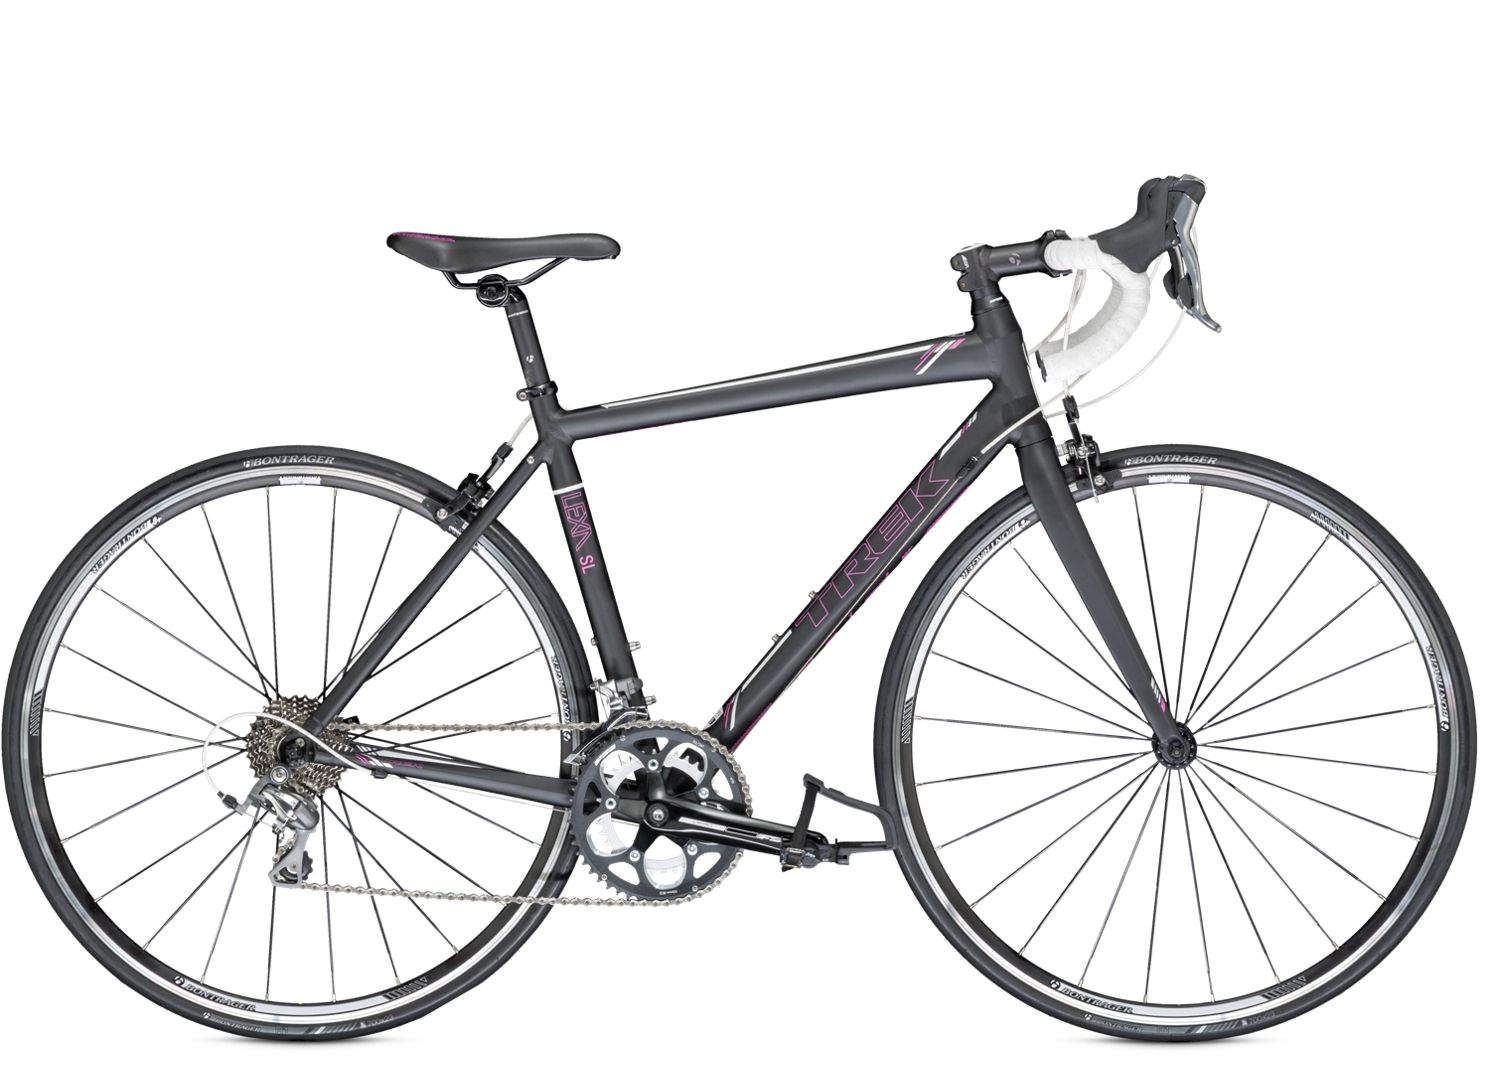  Отзывы о Шоссейном велосипеде Trek Lexa SL H3 Fit Compact 2014